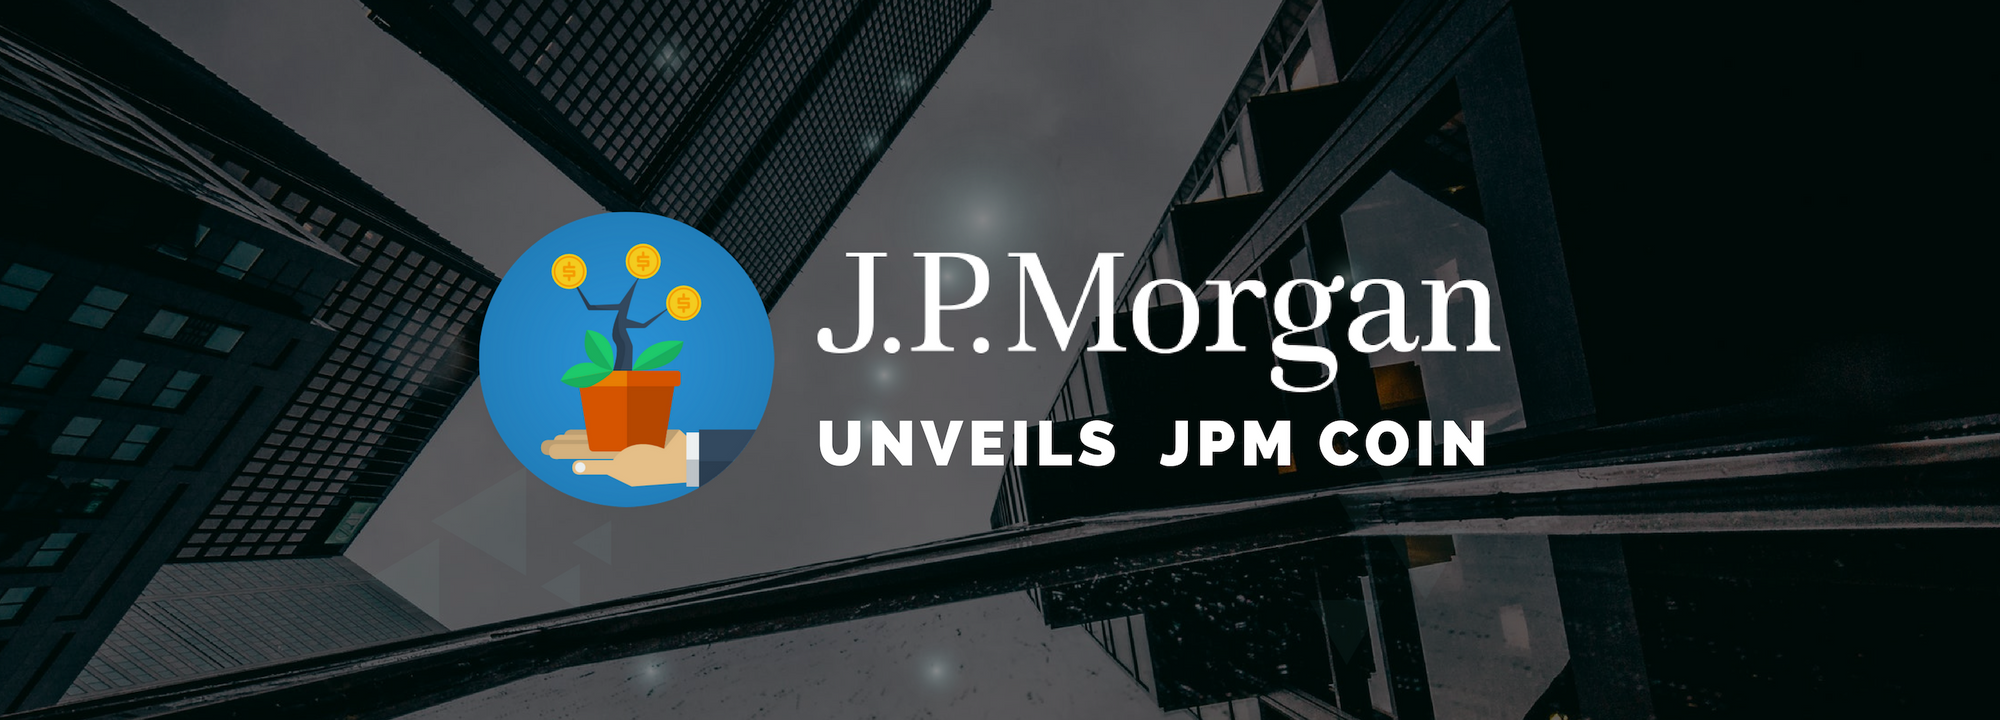 JP Morgan Unveils JPM Coin